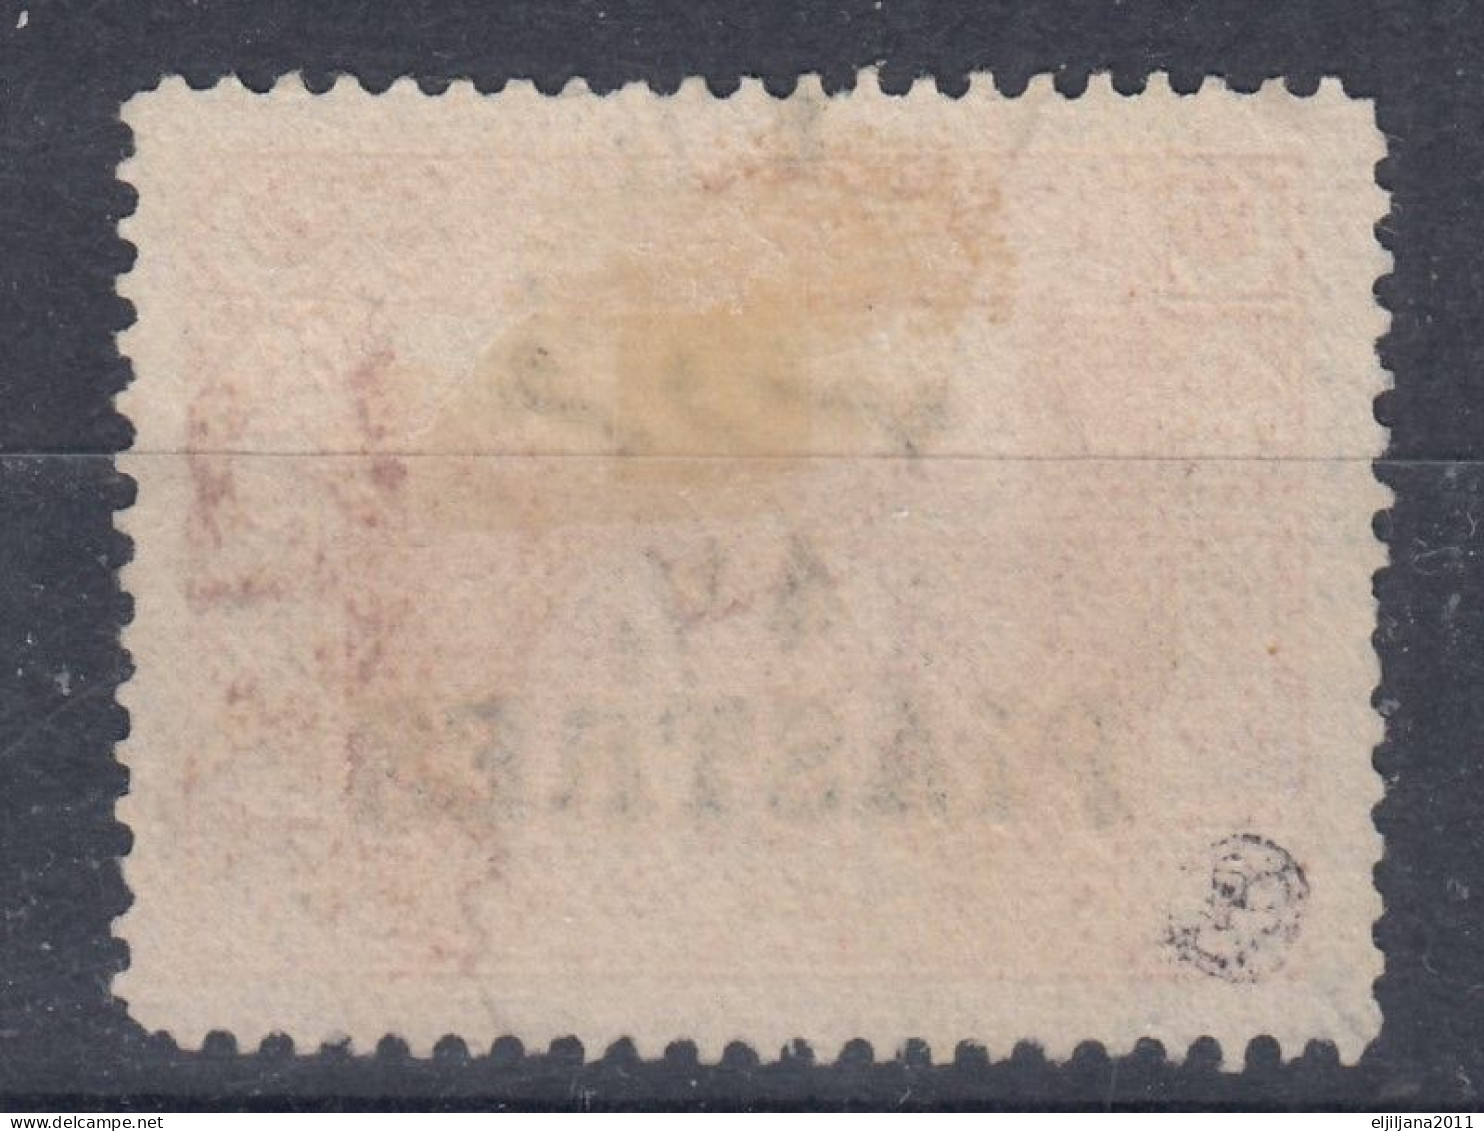 Turkey / Türkei 1921 ⁕ Surcharge - Overprint Mi.687 ⁕ 1v Used - Gebraucht